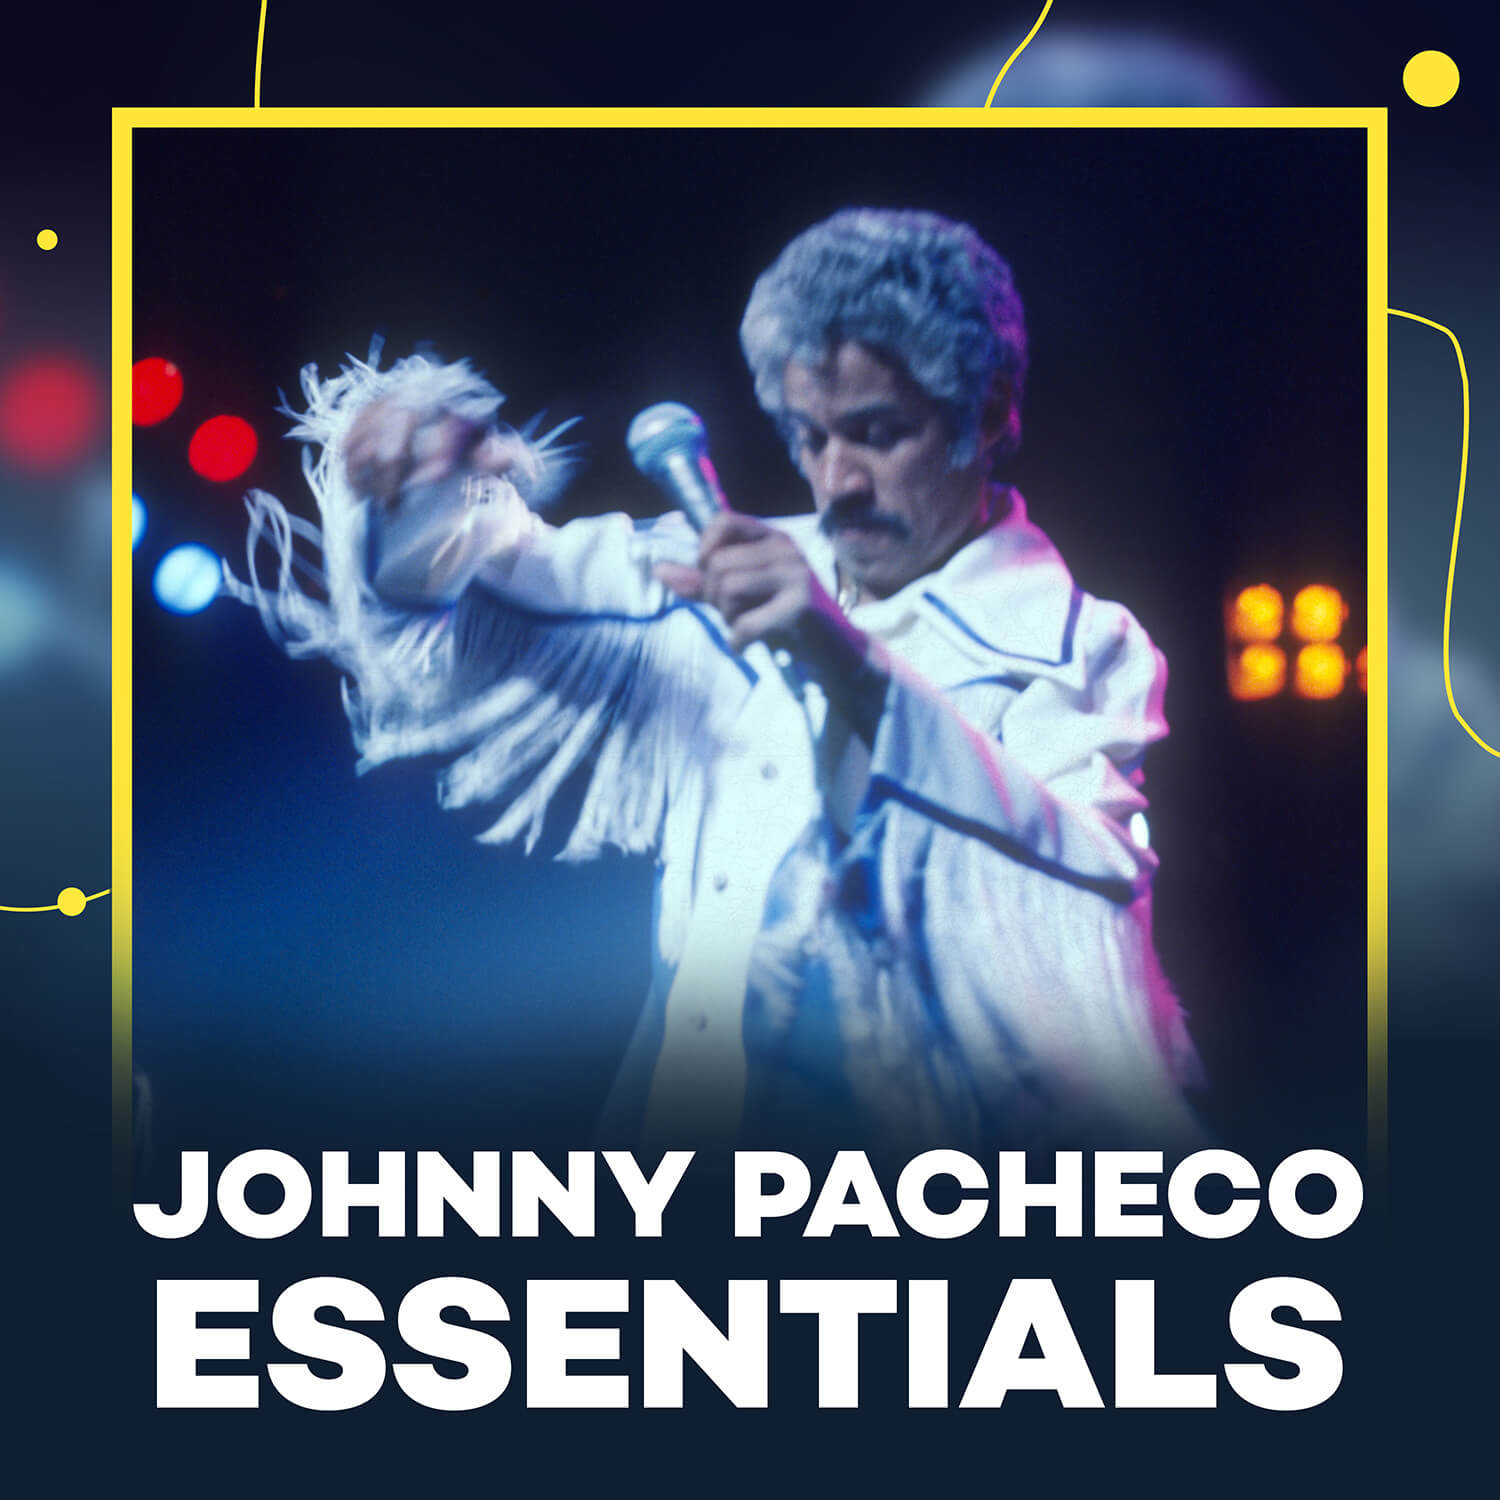 Johnny Pacheco Essentials Portada